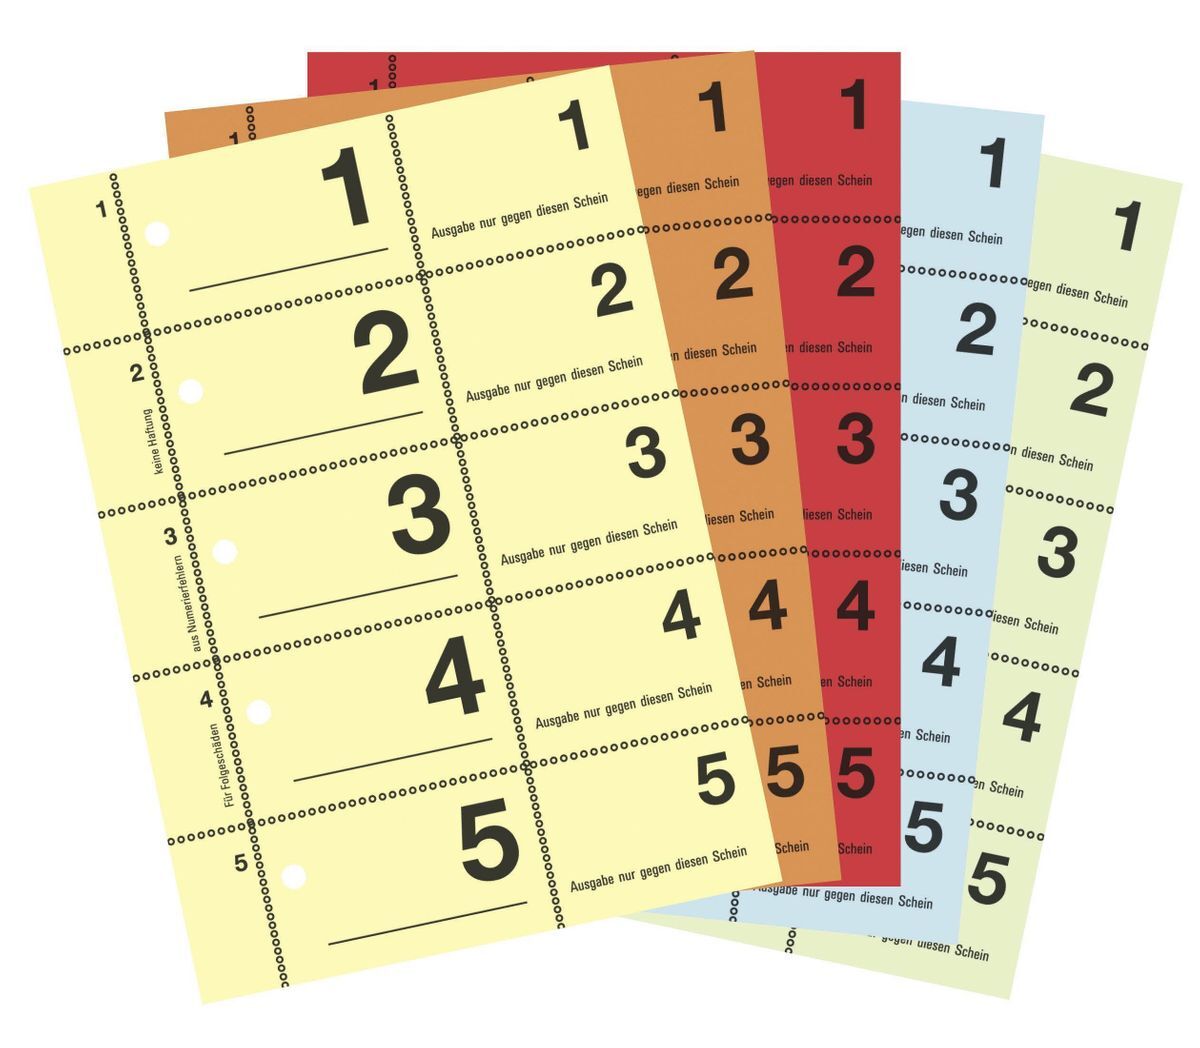 867 Garderobennummern, DIN A6, farbig sortiert, 100 Blatt / Block, gelb, orange, rot, blau, grün